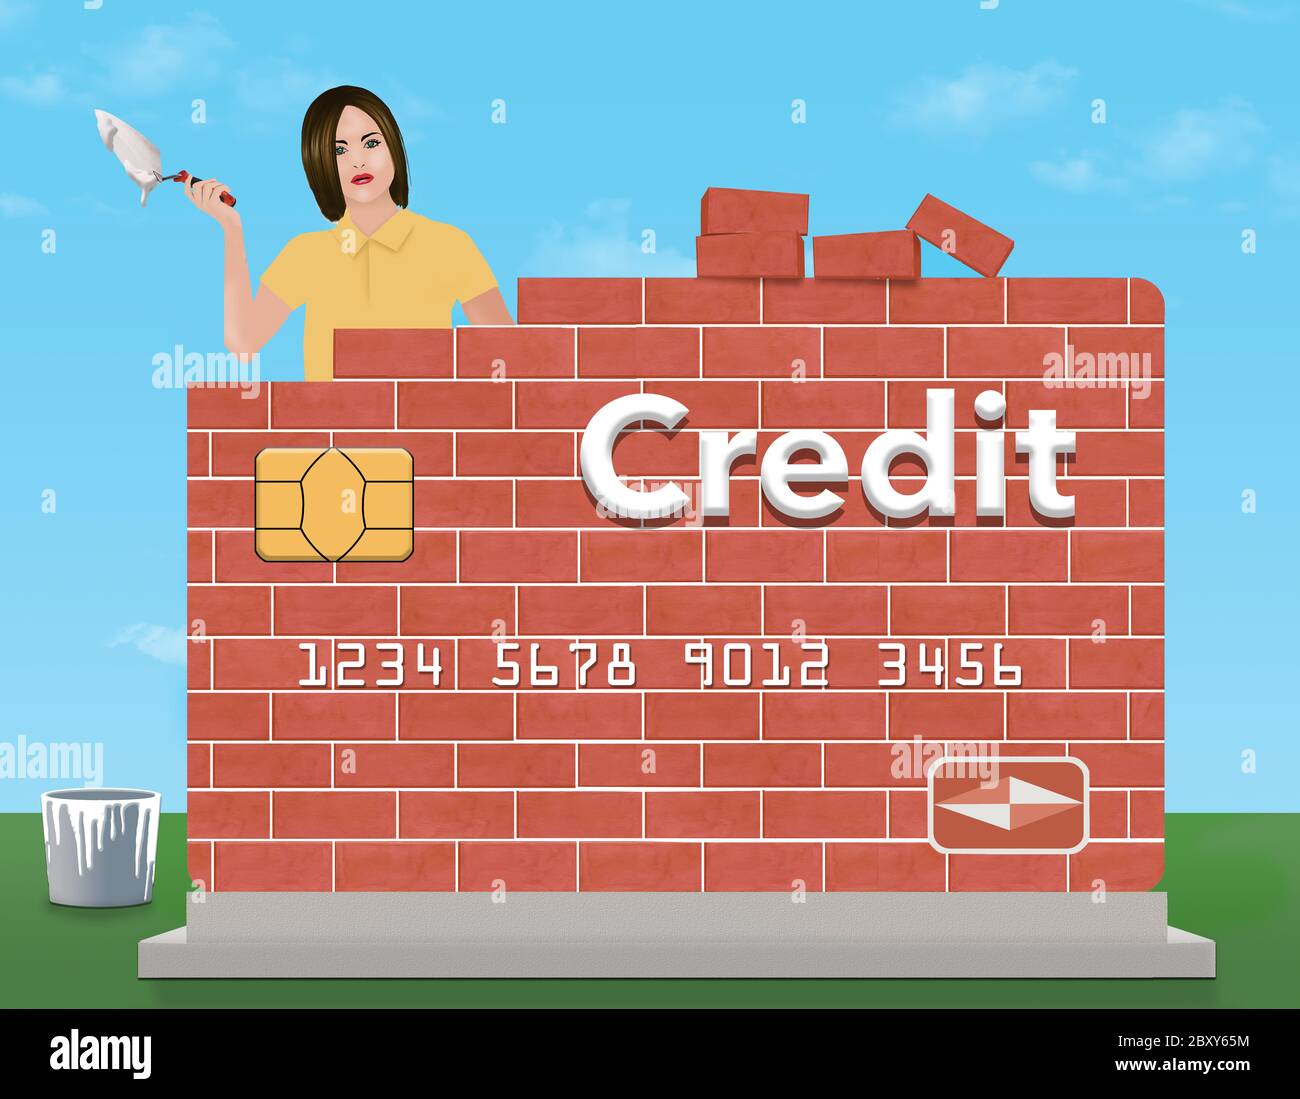 Eine junge Frau hält eine Kelle und Mörser, wie sie eine Backstein-Kreditkarte im Freien baut. Das Thema ist Wiederaufbau oder Reparatur Ihrer Bonität. Stockfoto